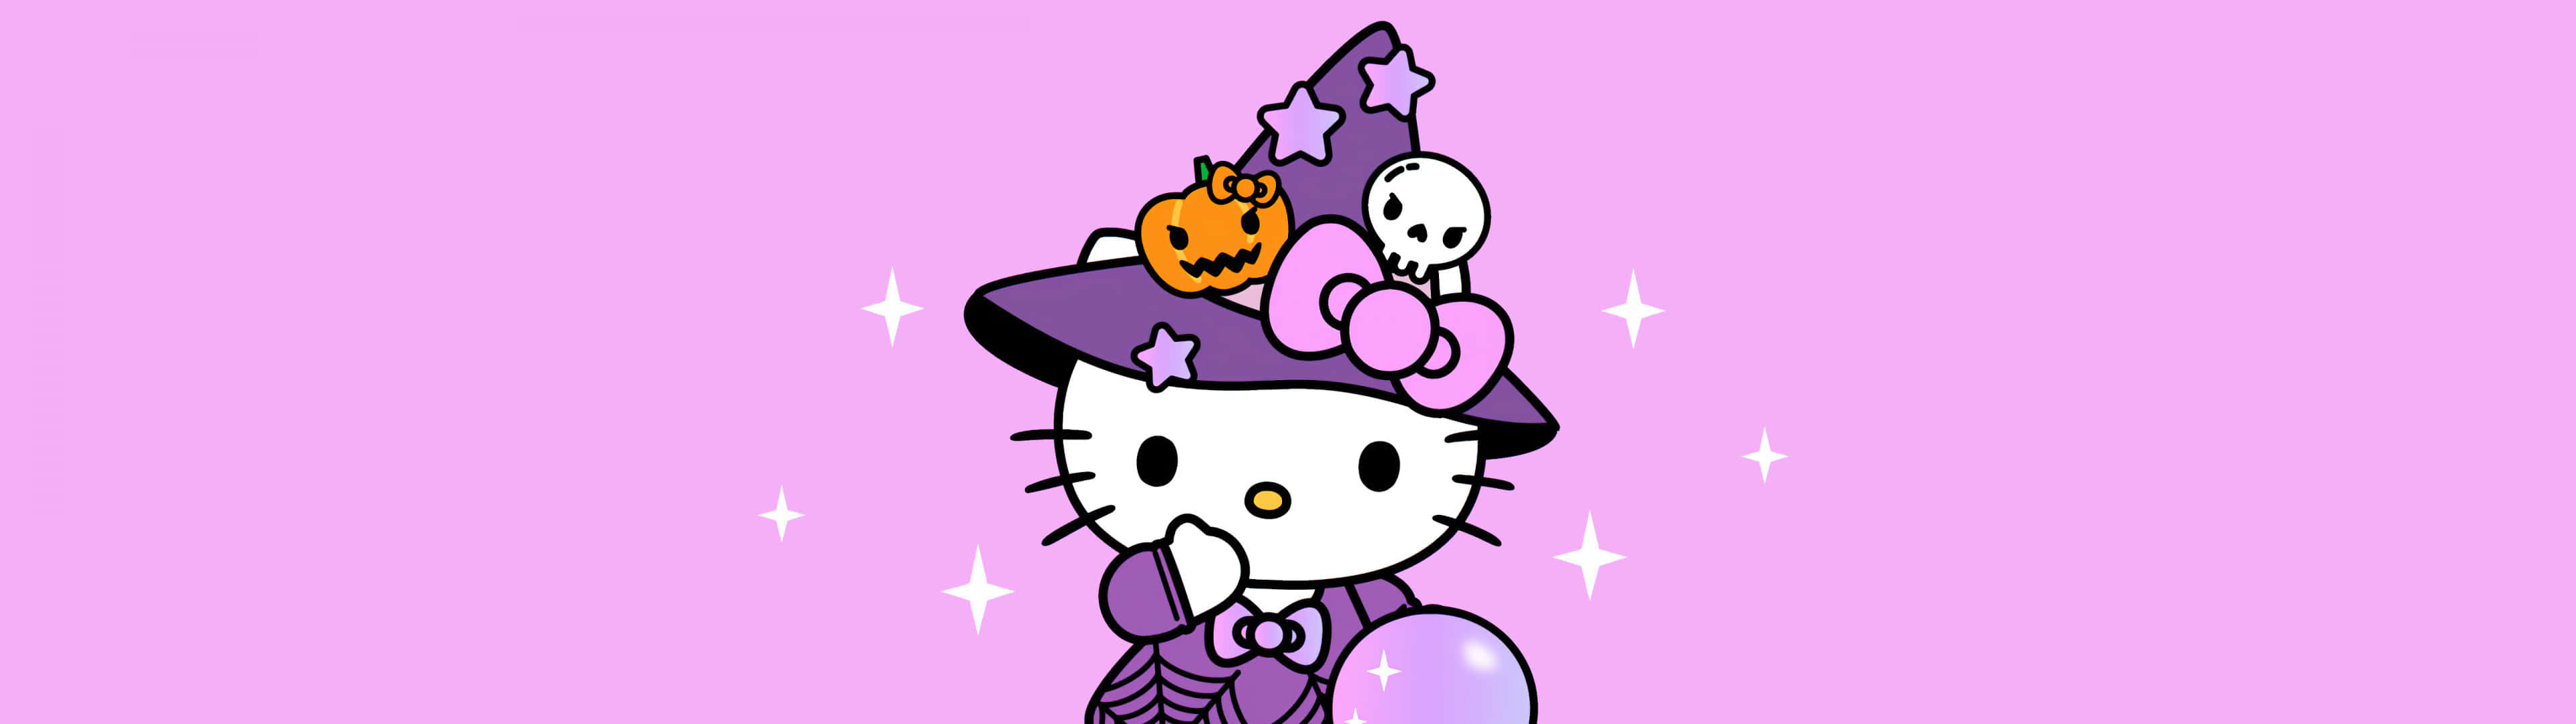 Halloween Hello Kitty Purple Background Wallpaper